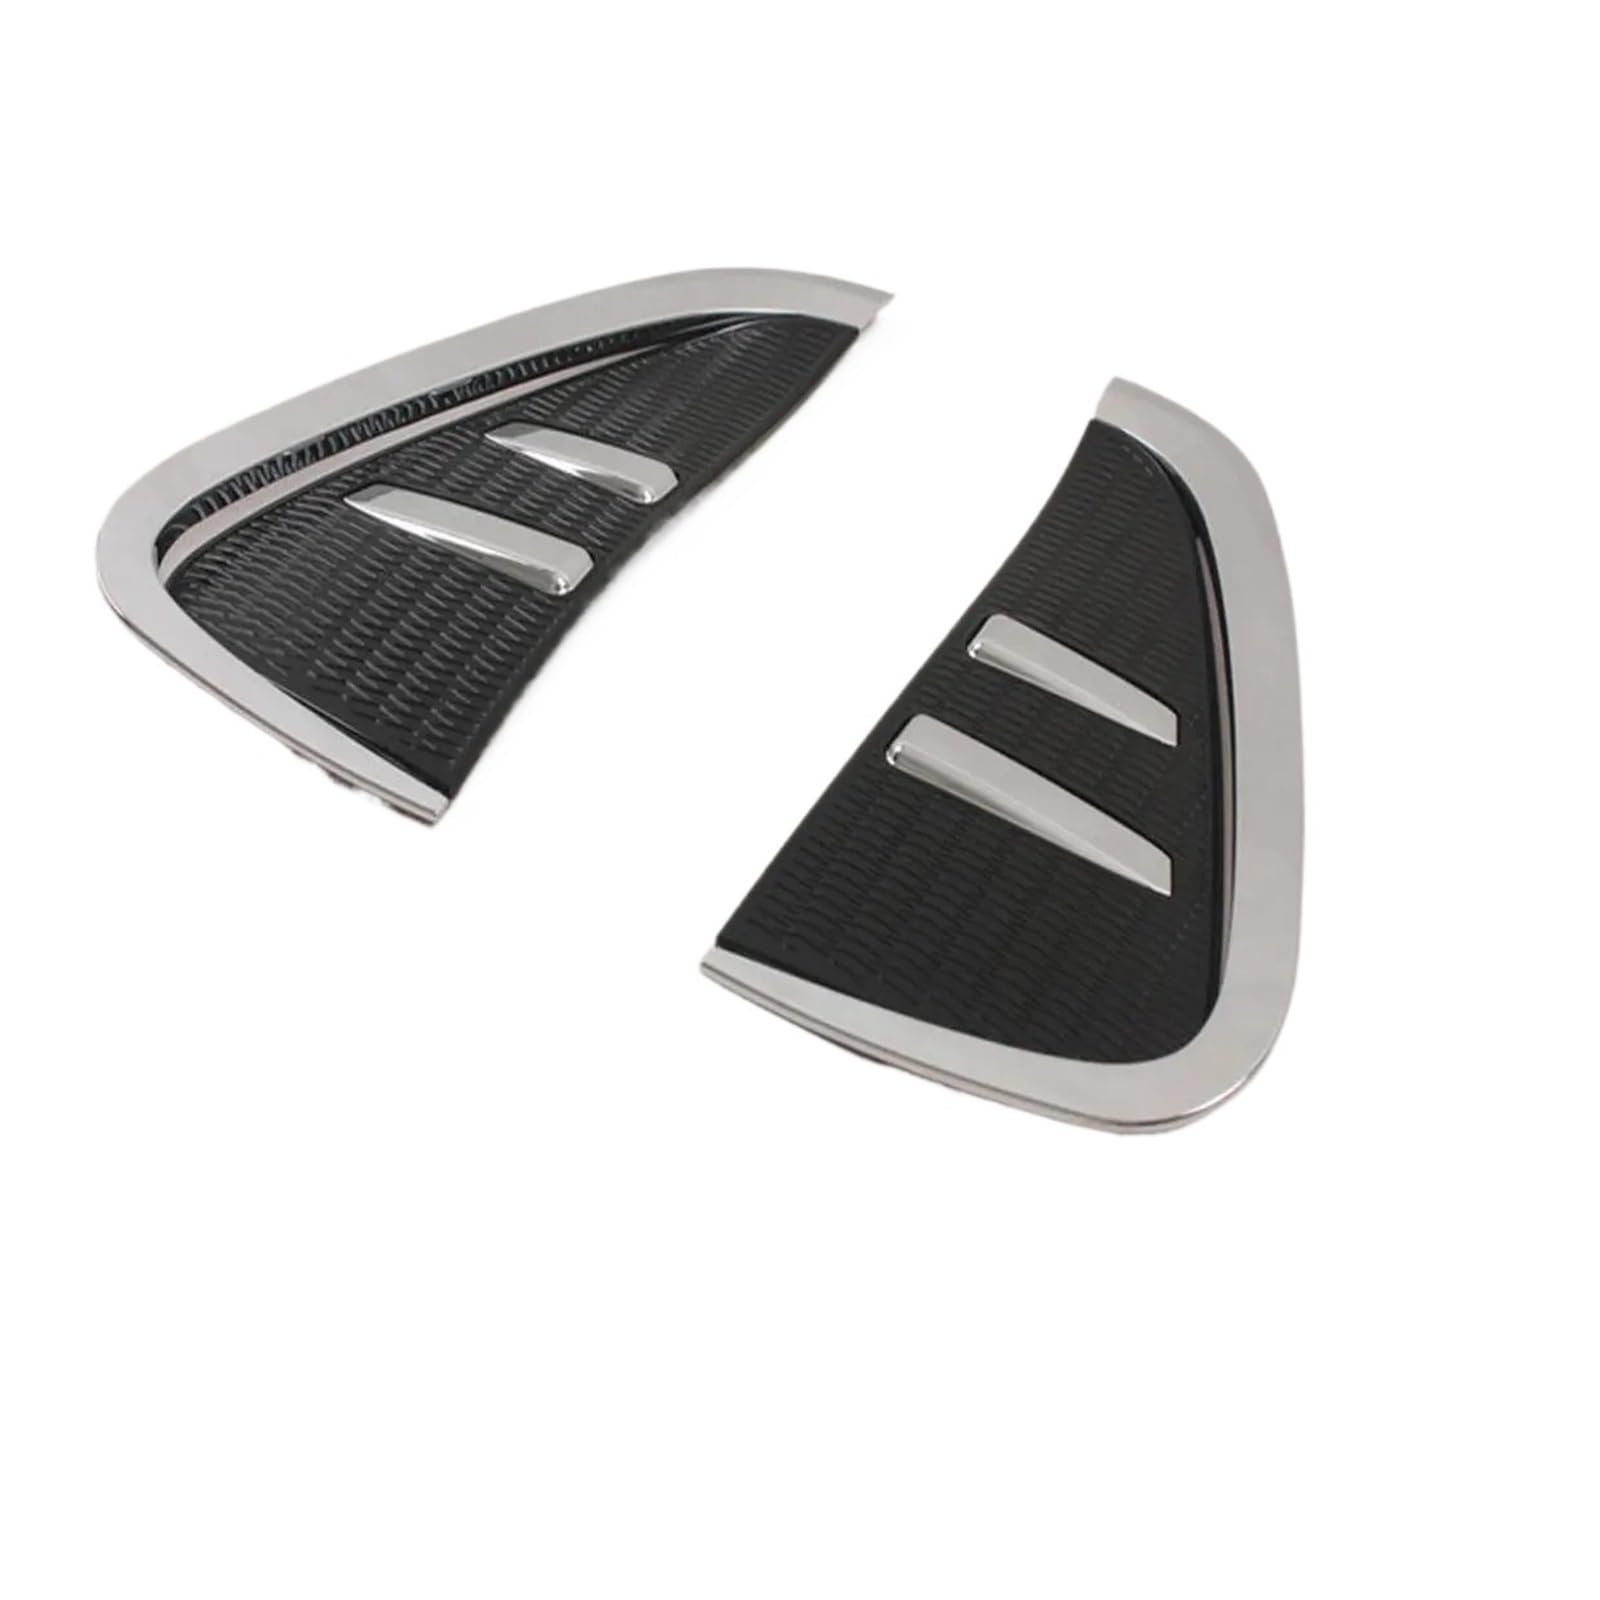 2 Stück Chrom ABS Auto Vorderseite Kotflügel Entlüftungsöffnungen Air Out Abdeckung Trim Styling Aufkleber Kompatibel for BMW X5 F15 2014-2016 von KDMOWHON